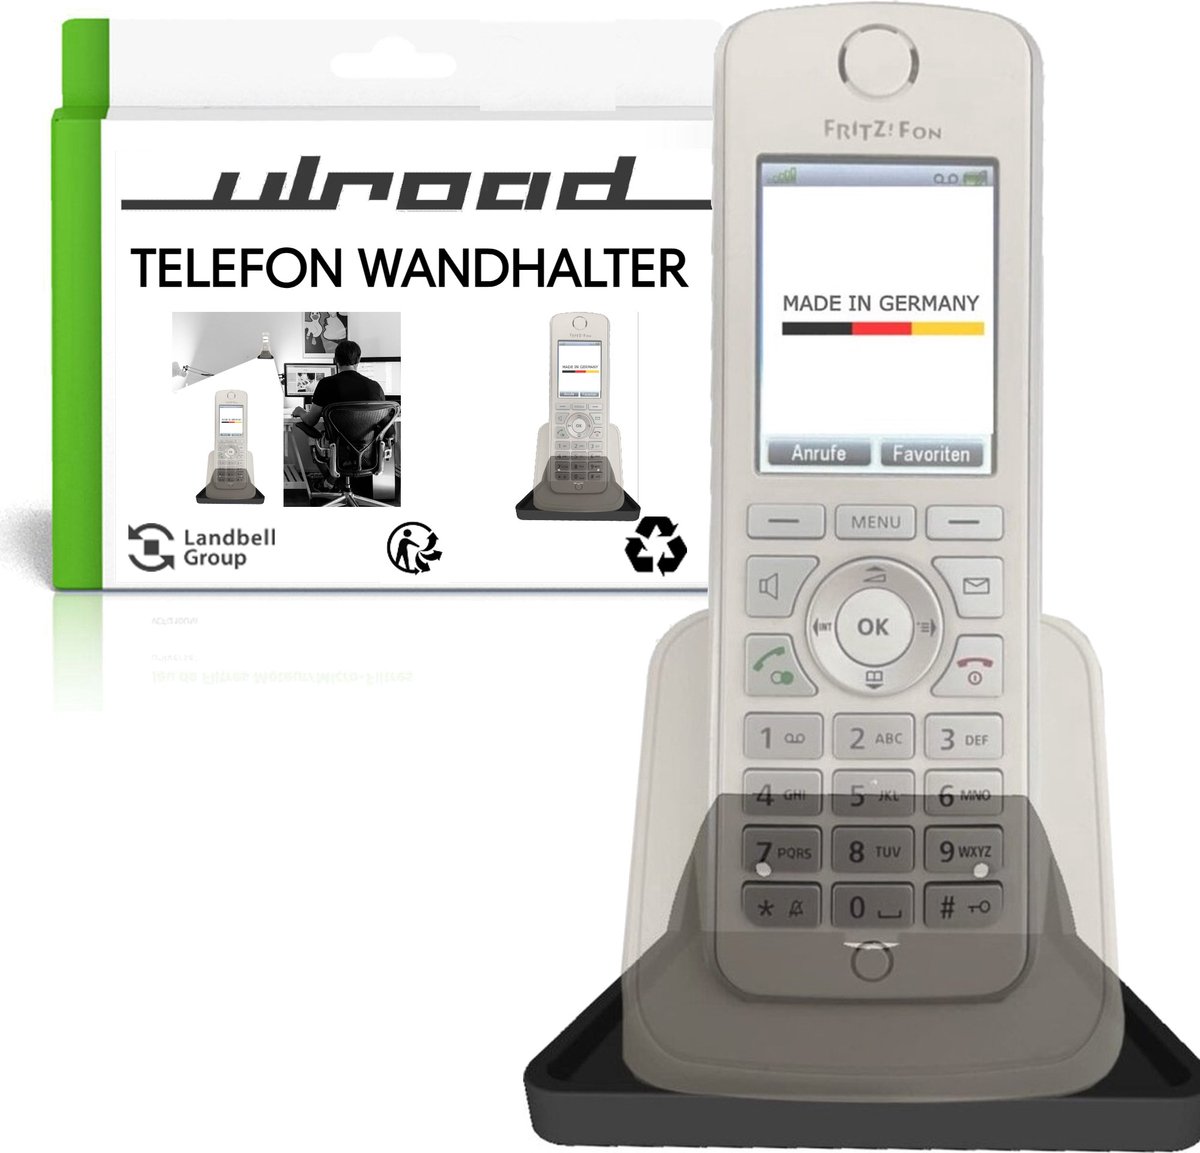 ULROAD muurbeugel telefoon, wandhouder voor telefoonhoorn, geschikt voor AVM Fritz!Fon mt-f C7 C6 C5 C4. Universeel voor vele merken.